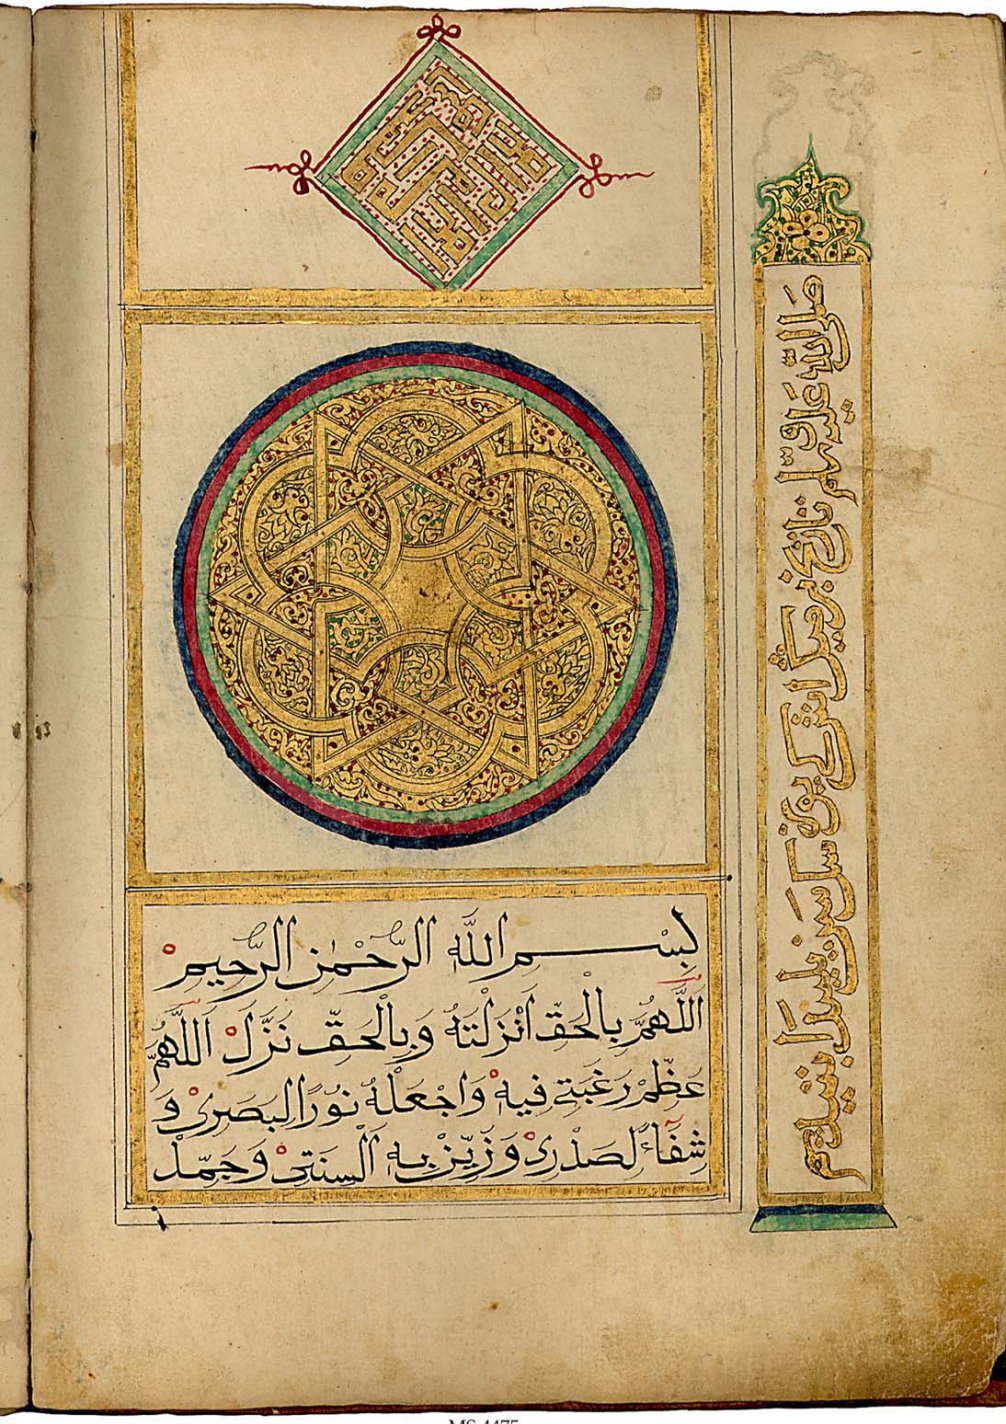 نسخة من القرآن تظهر عليها نجمة سداسية Qur'an_4475.   المصدر: ويكيبيديا